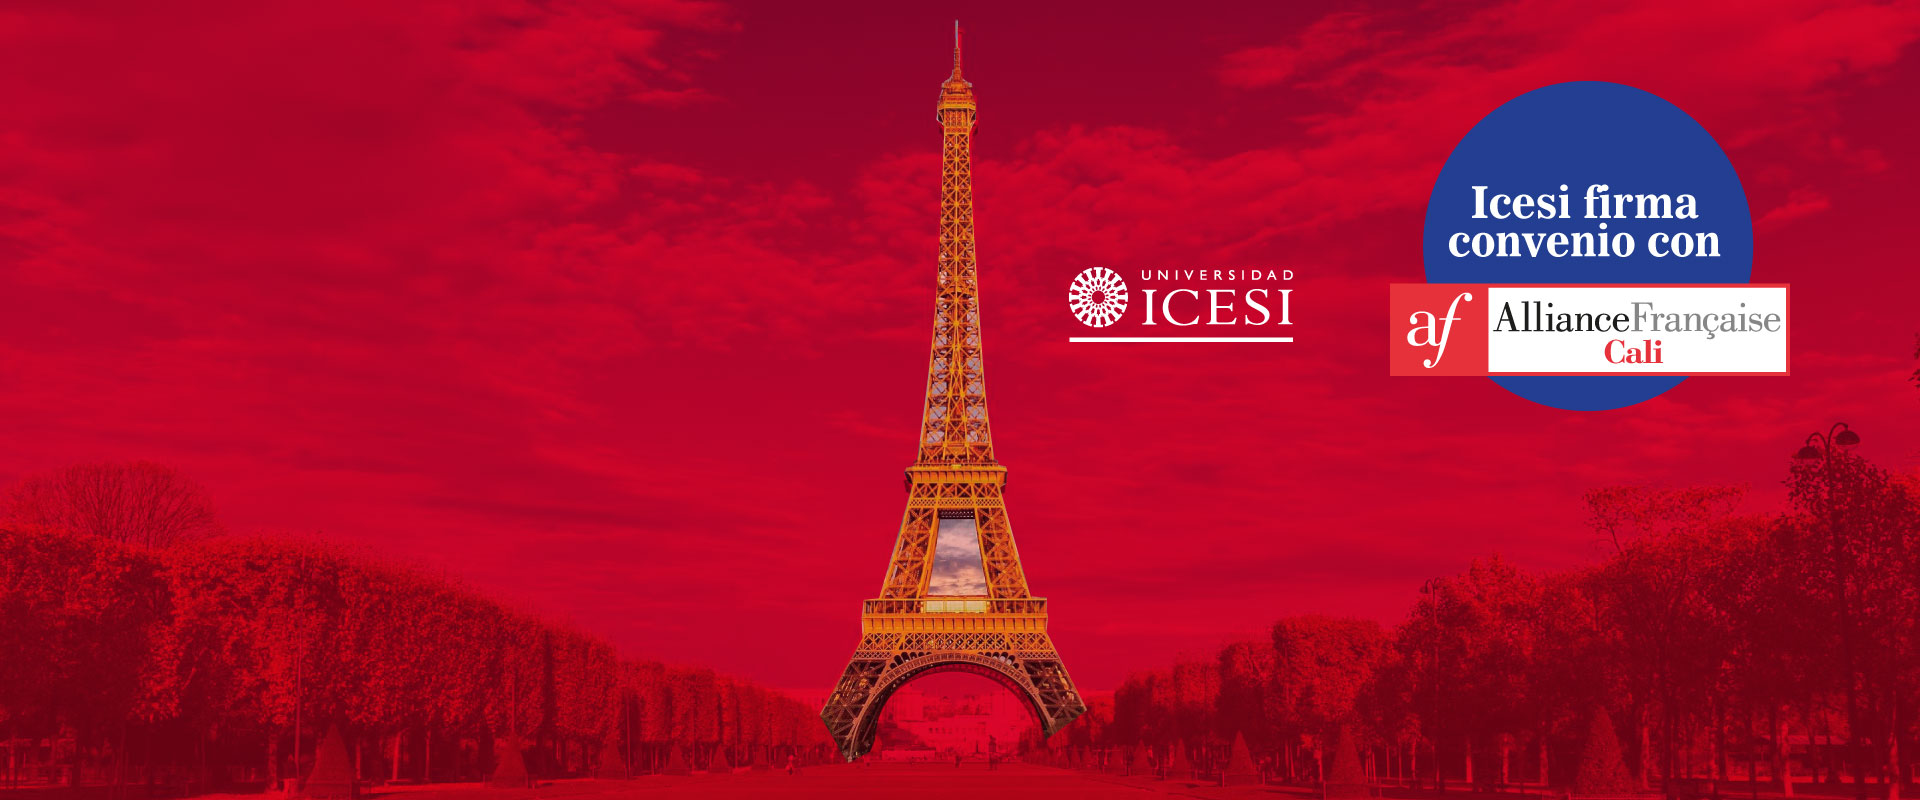 Se firma convenio de cooperación entre la Universidad Icesi y la Alianza Francesa Cali